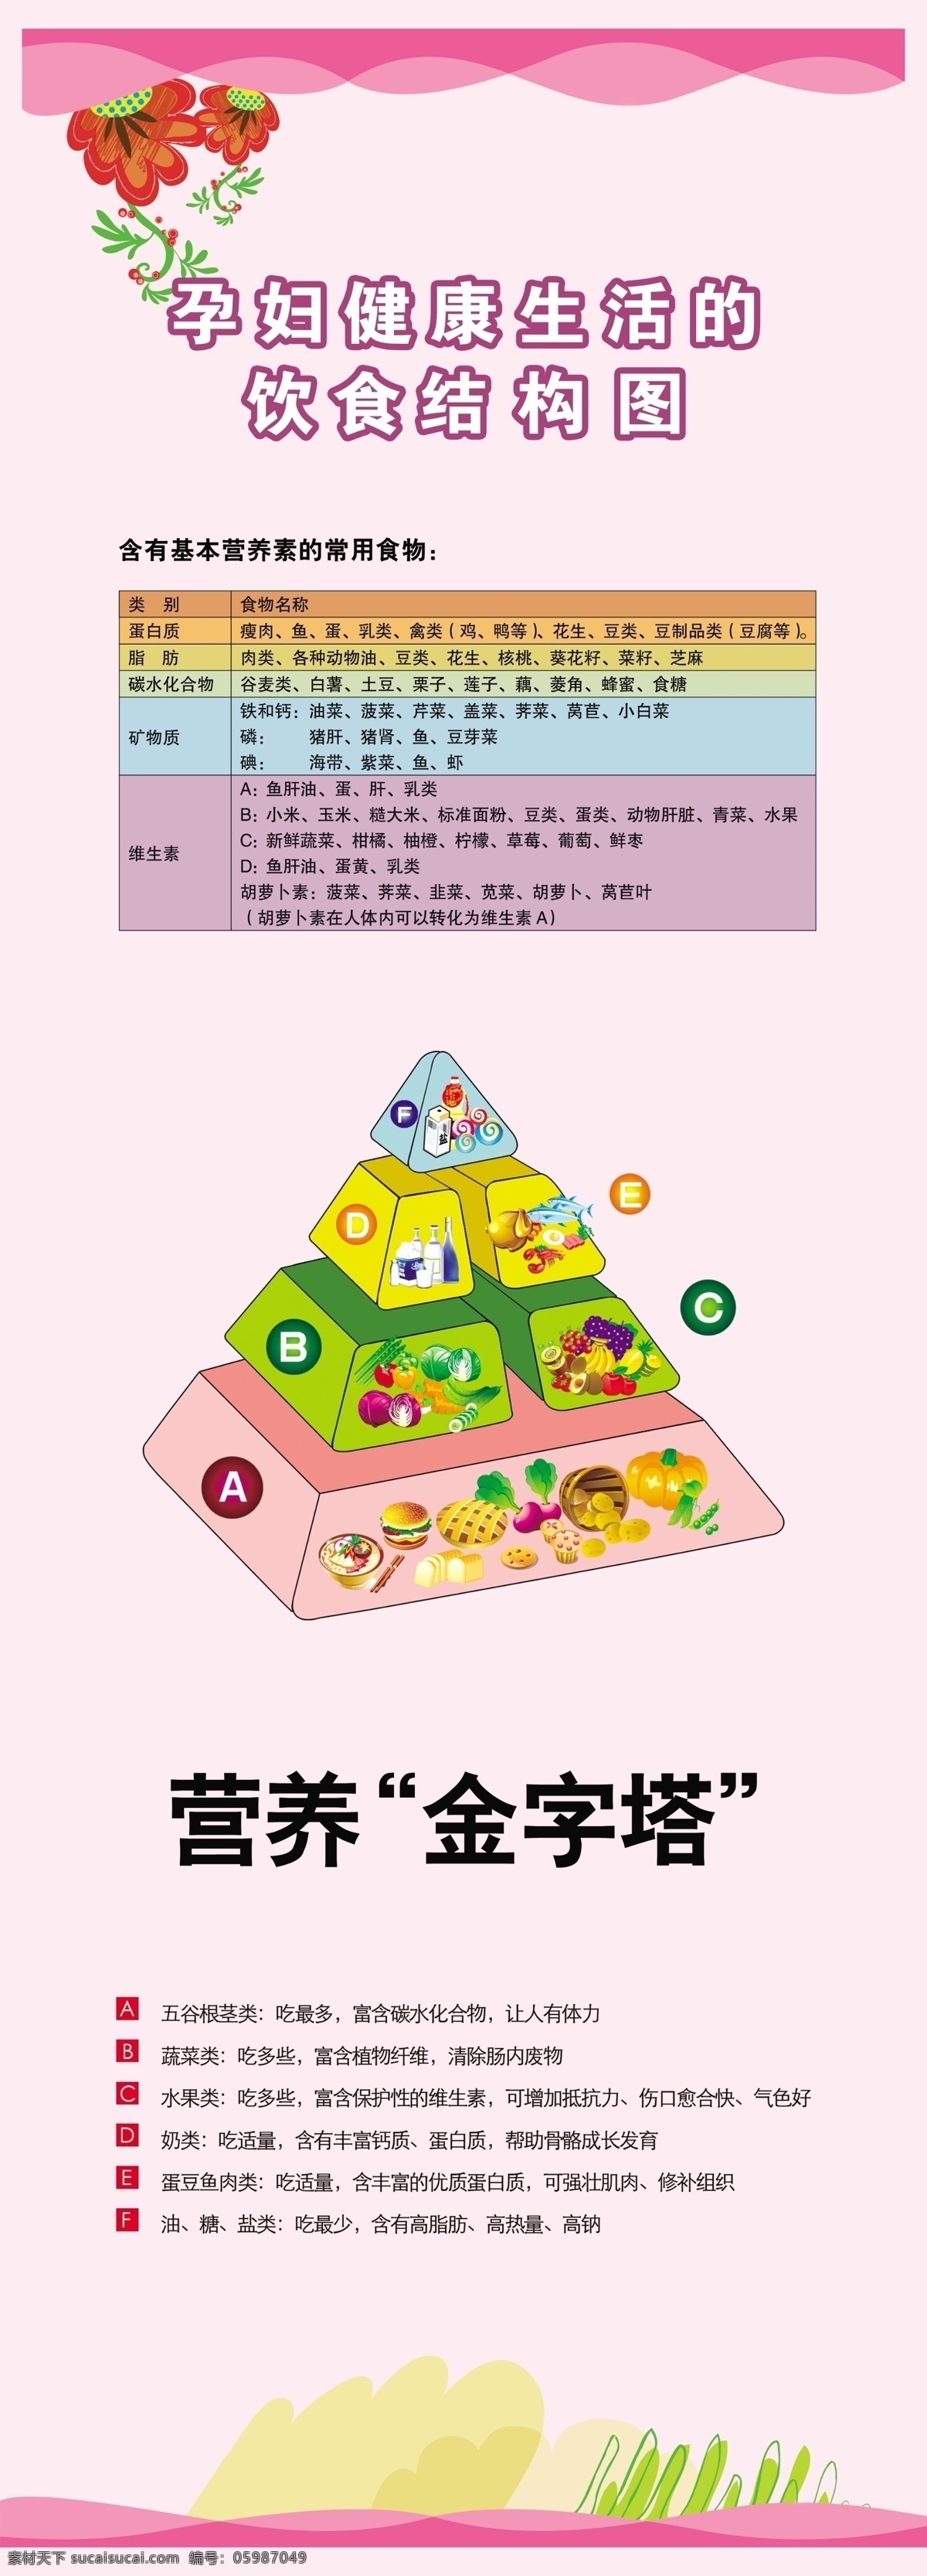 孕妇 饮食 结构图 营养金字塔 广告设计模板 其他模版 源文件库